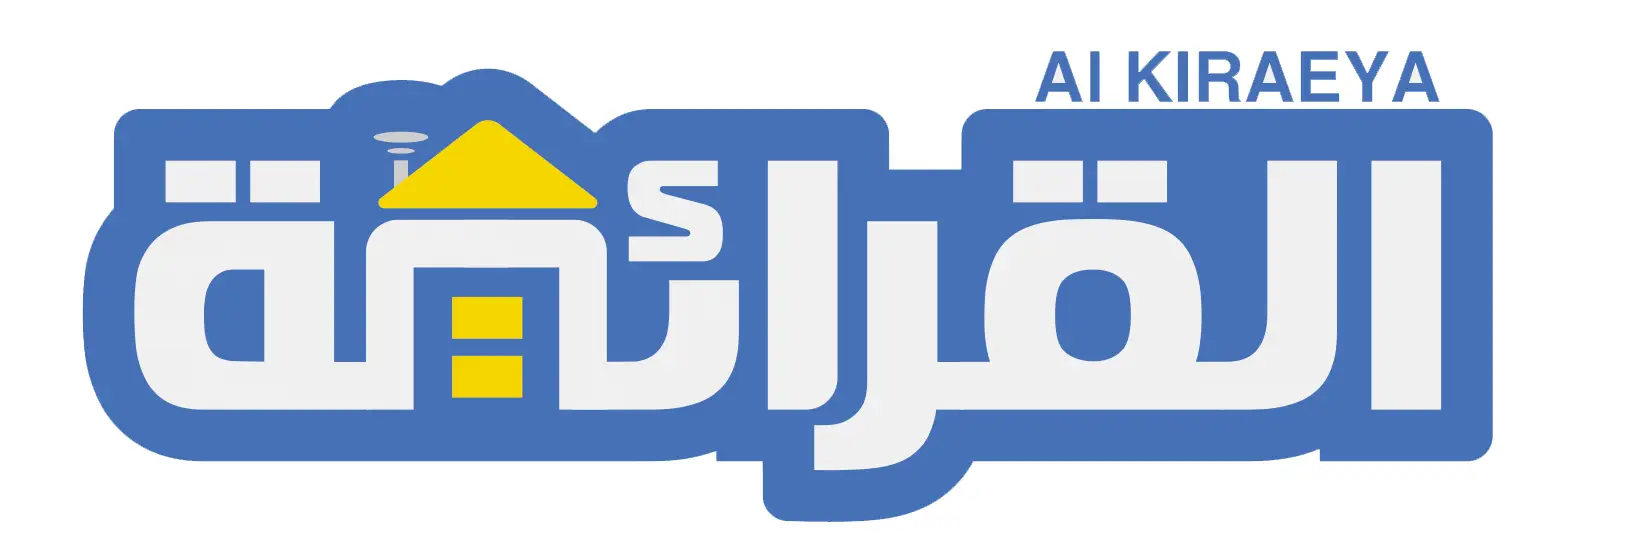 Logo-Alkiraeya